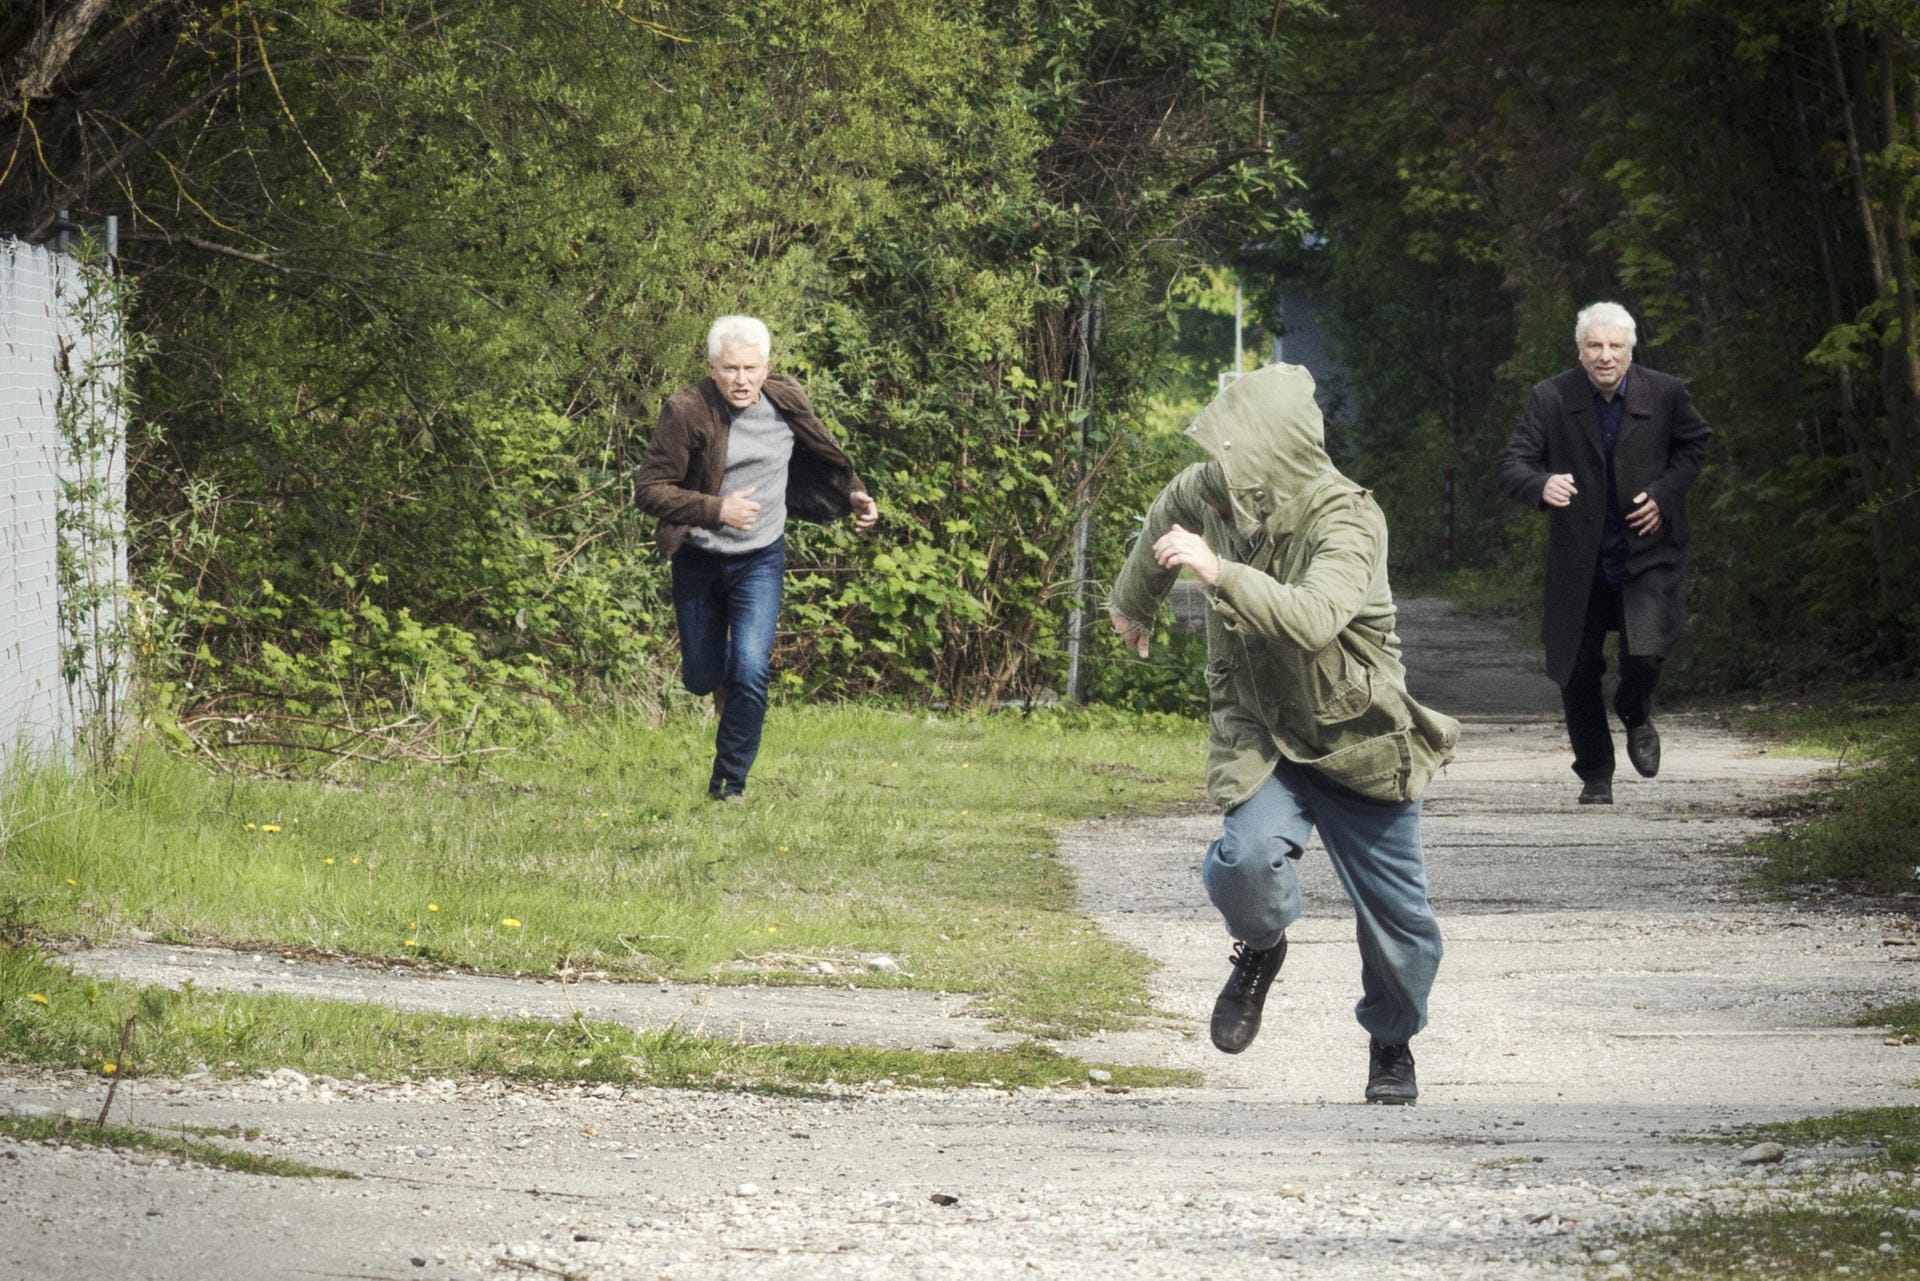 Batic (Miroslav Nemec) und Leitmayr (Udo Wachtveitl) verfolgen einen Verdächtigen, der vom Tatort weggerannt ist.